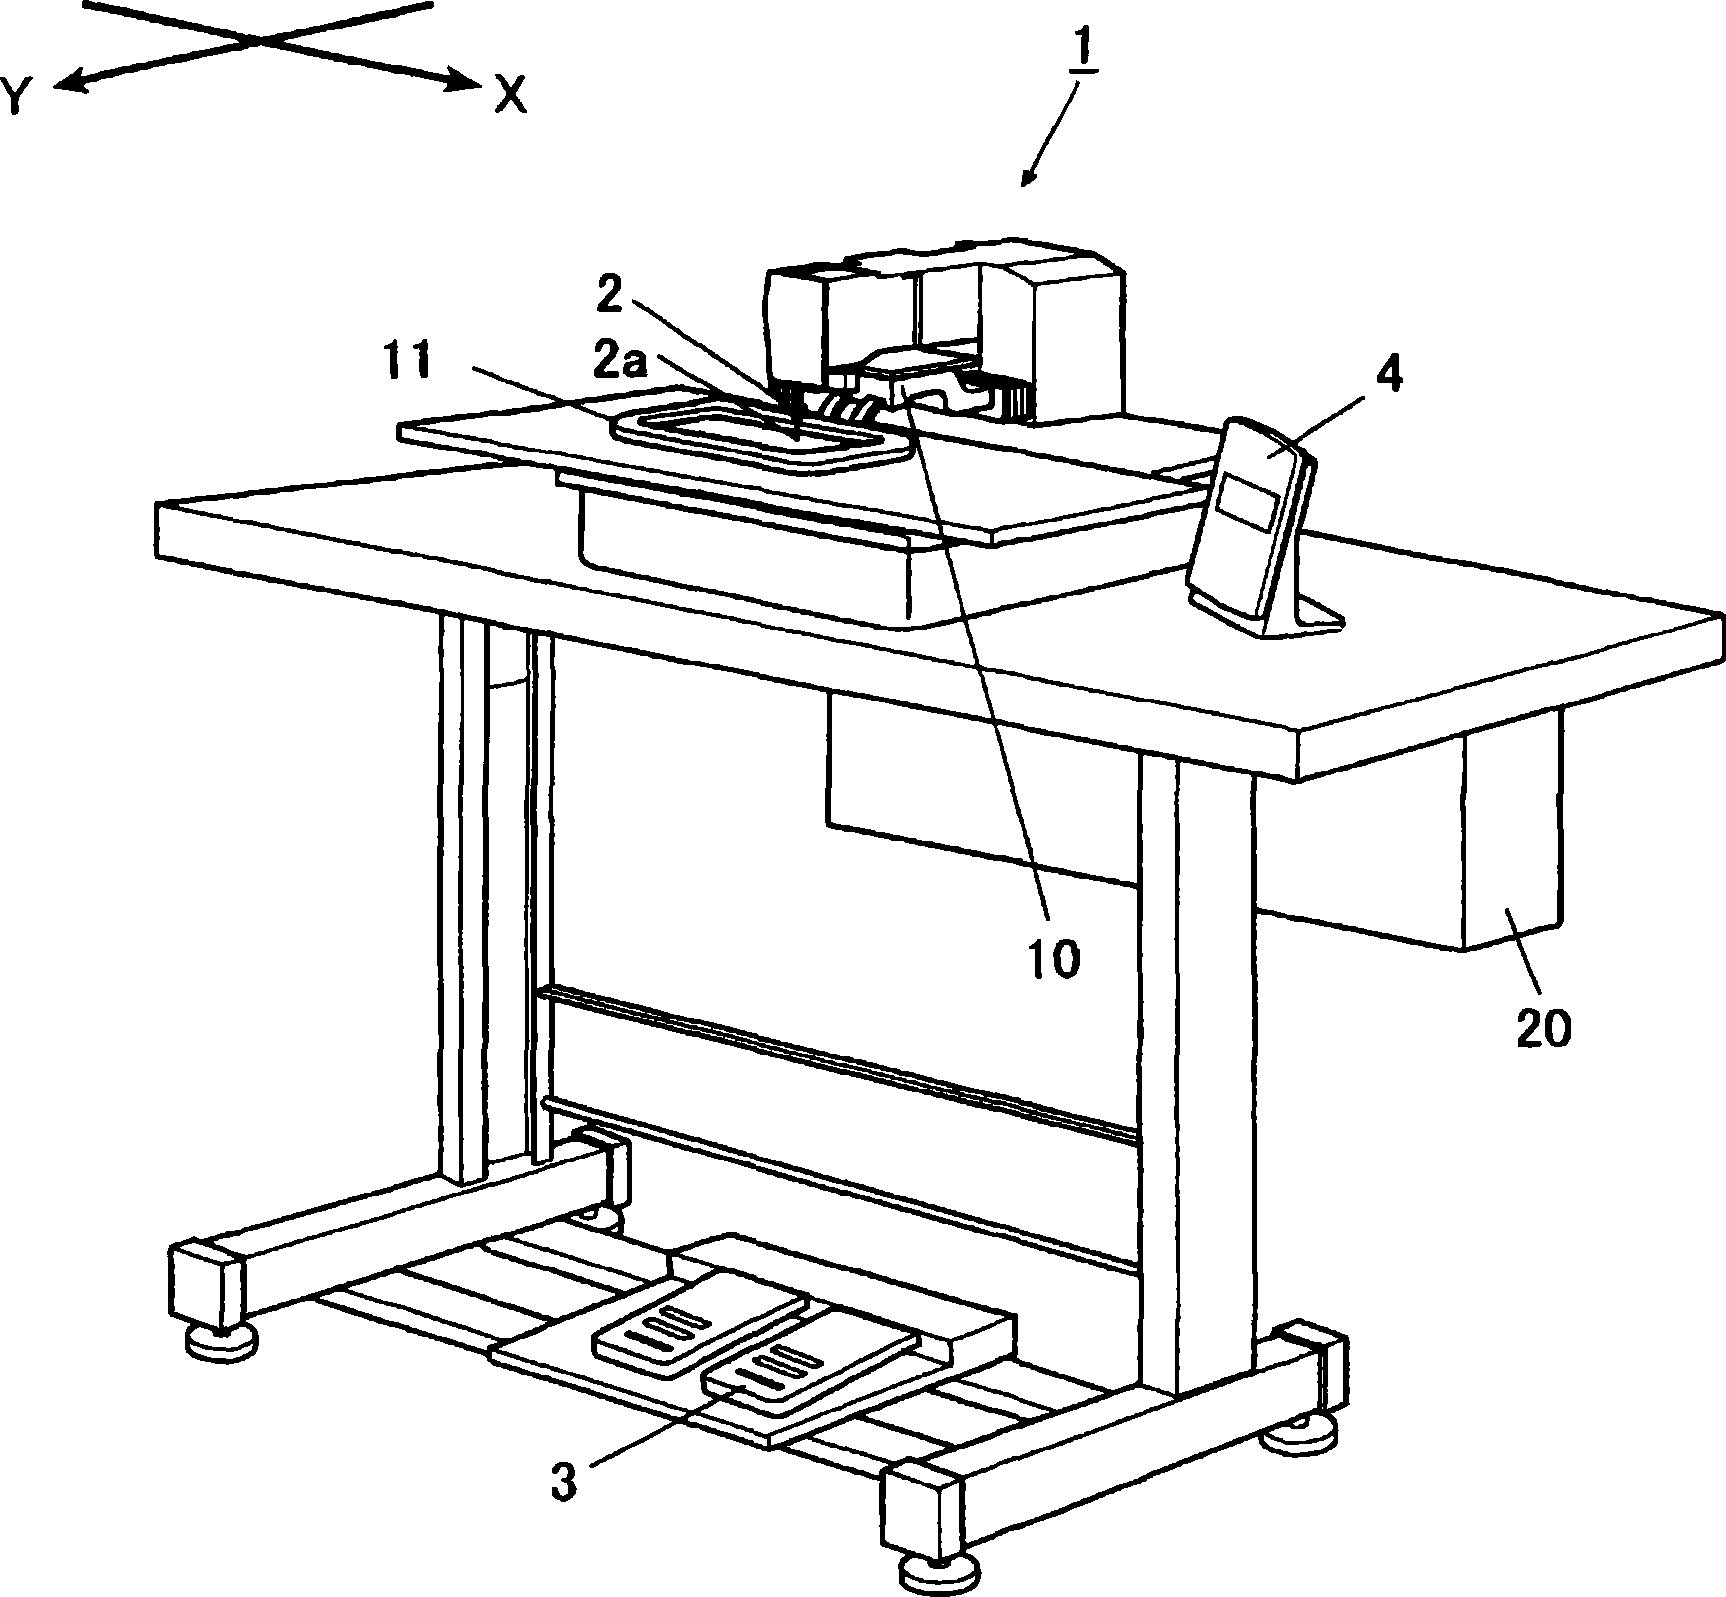 Automatic sewing machine